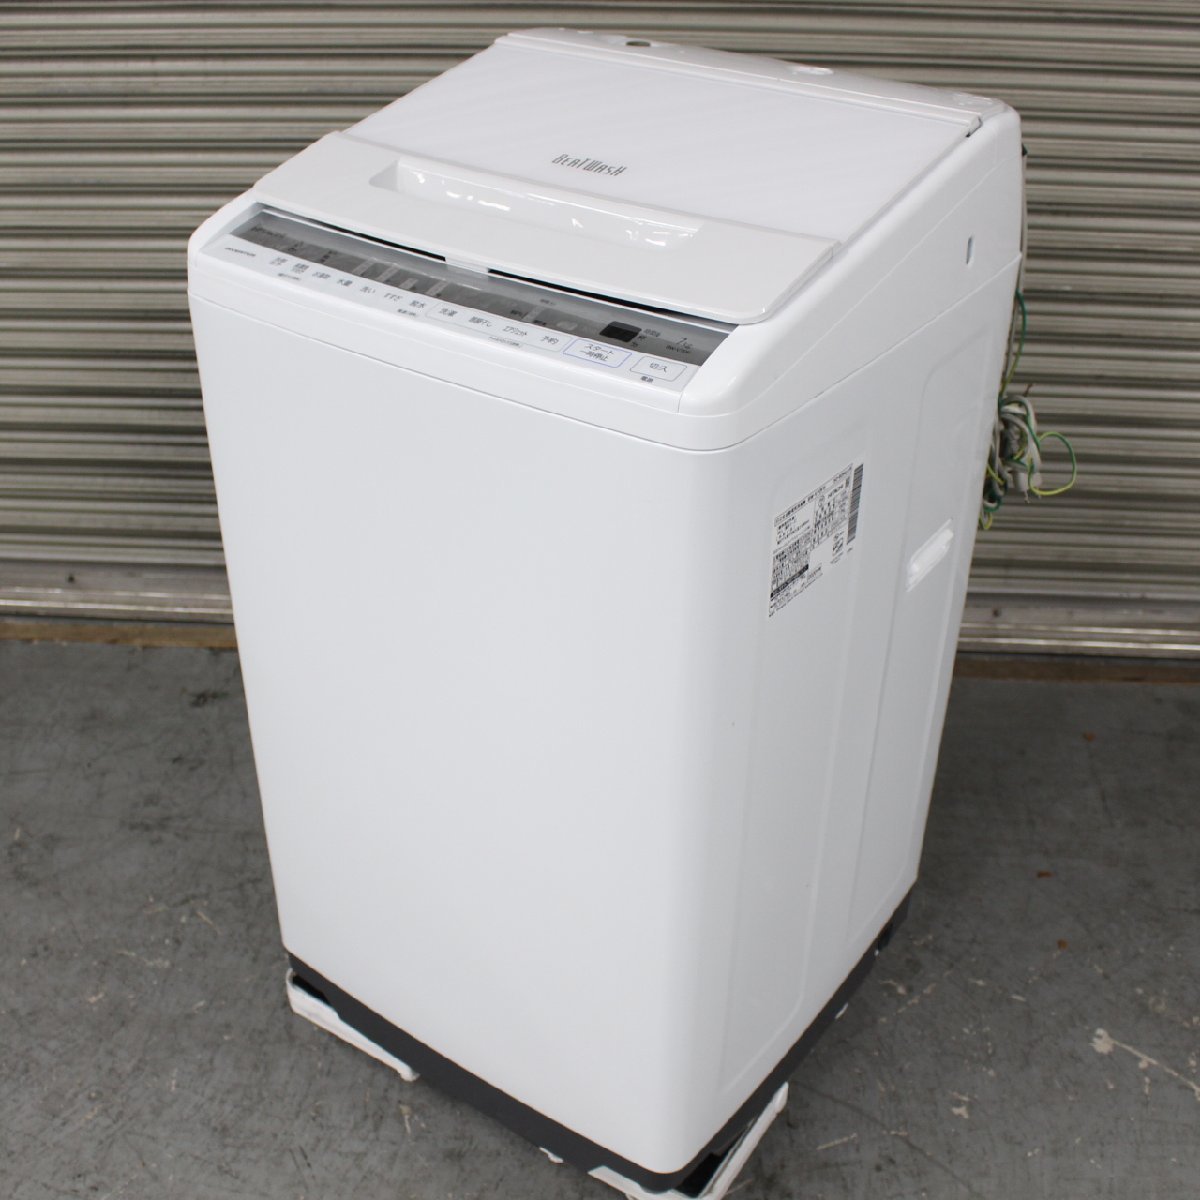 横浜市鶴見区にて 日立 全自動洗濯機 BEET WASH BW-V70F 2020年製 を出張買取させて頂きました。